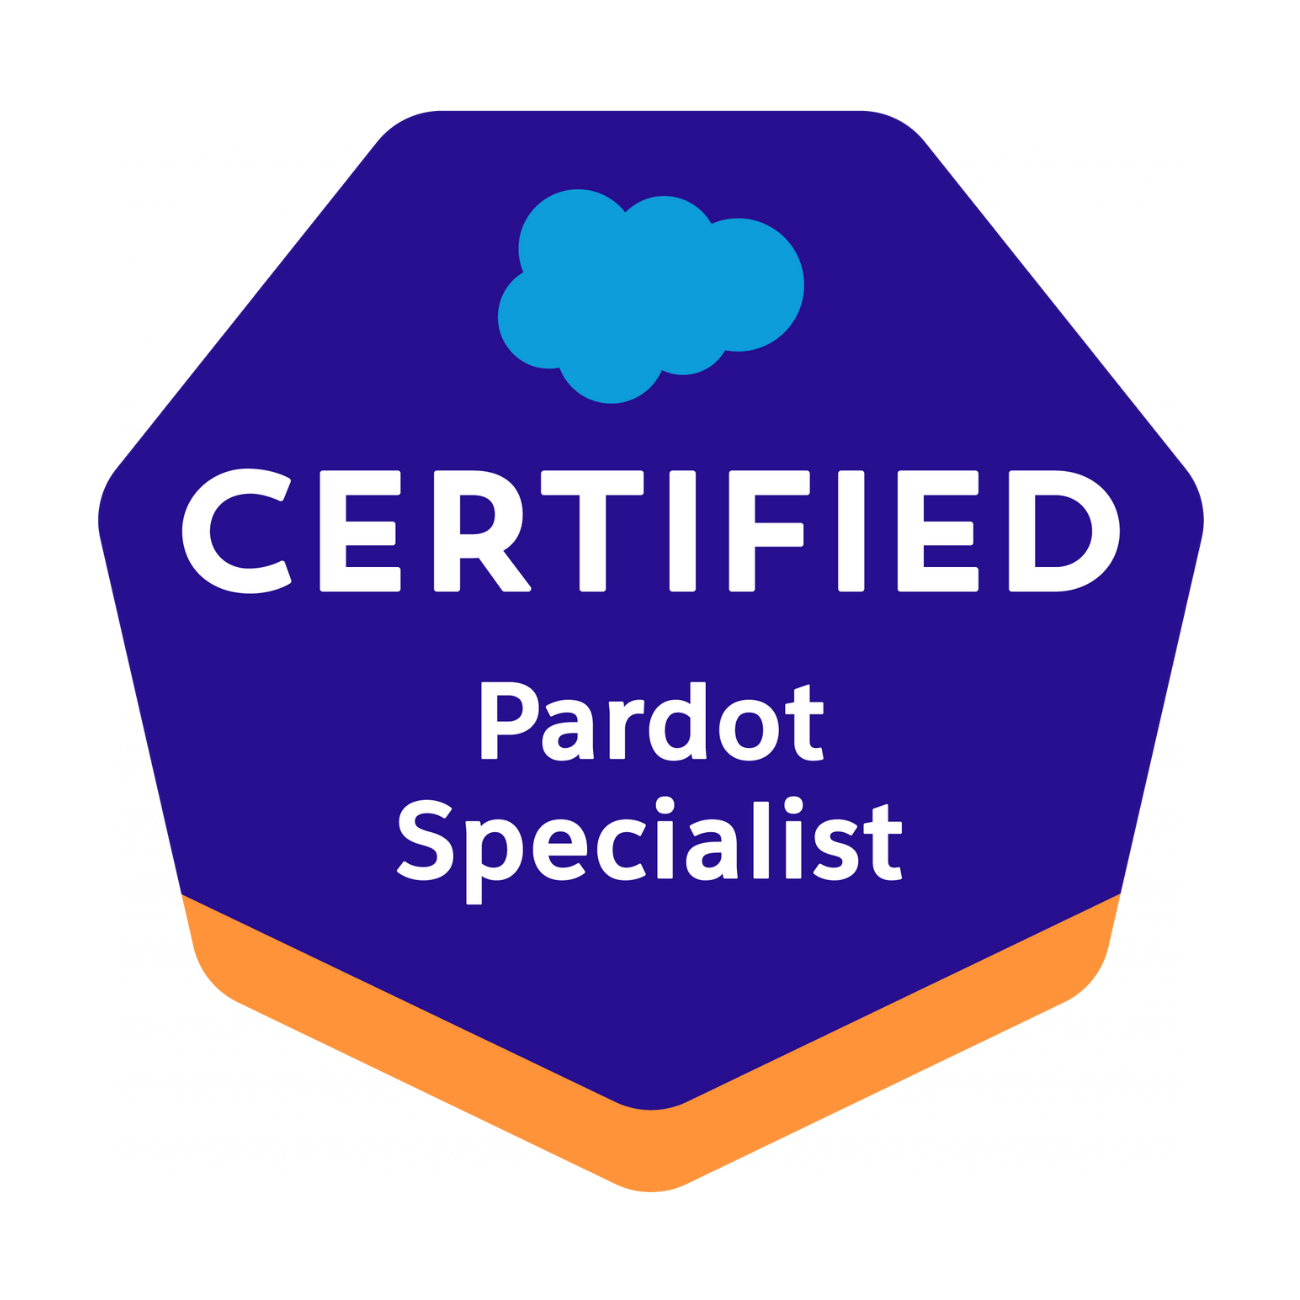 Certified Pardot Specialist badge